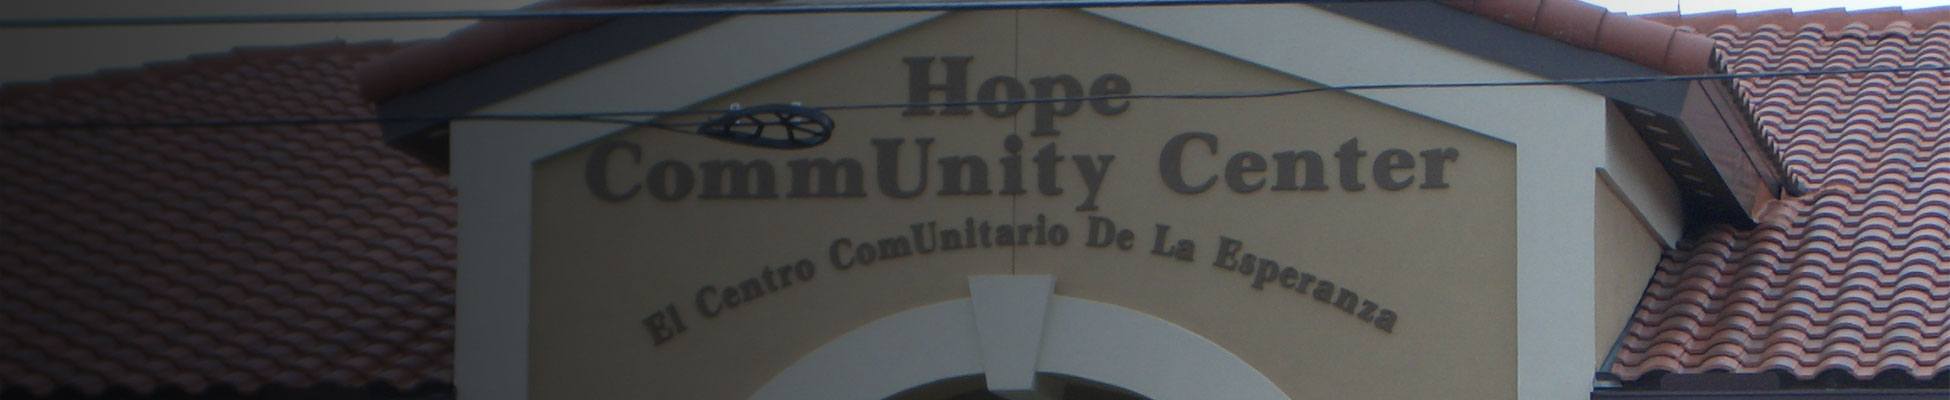 HOPE COMMUNITY CENTER